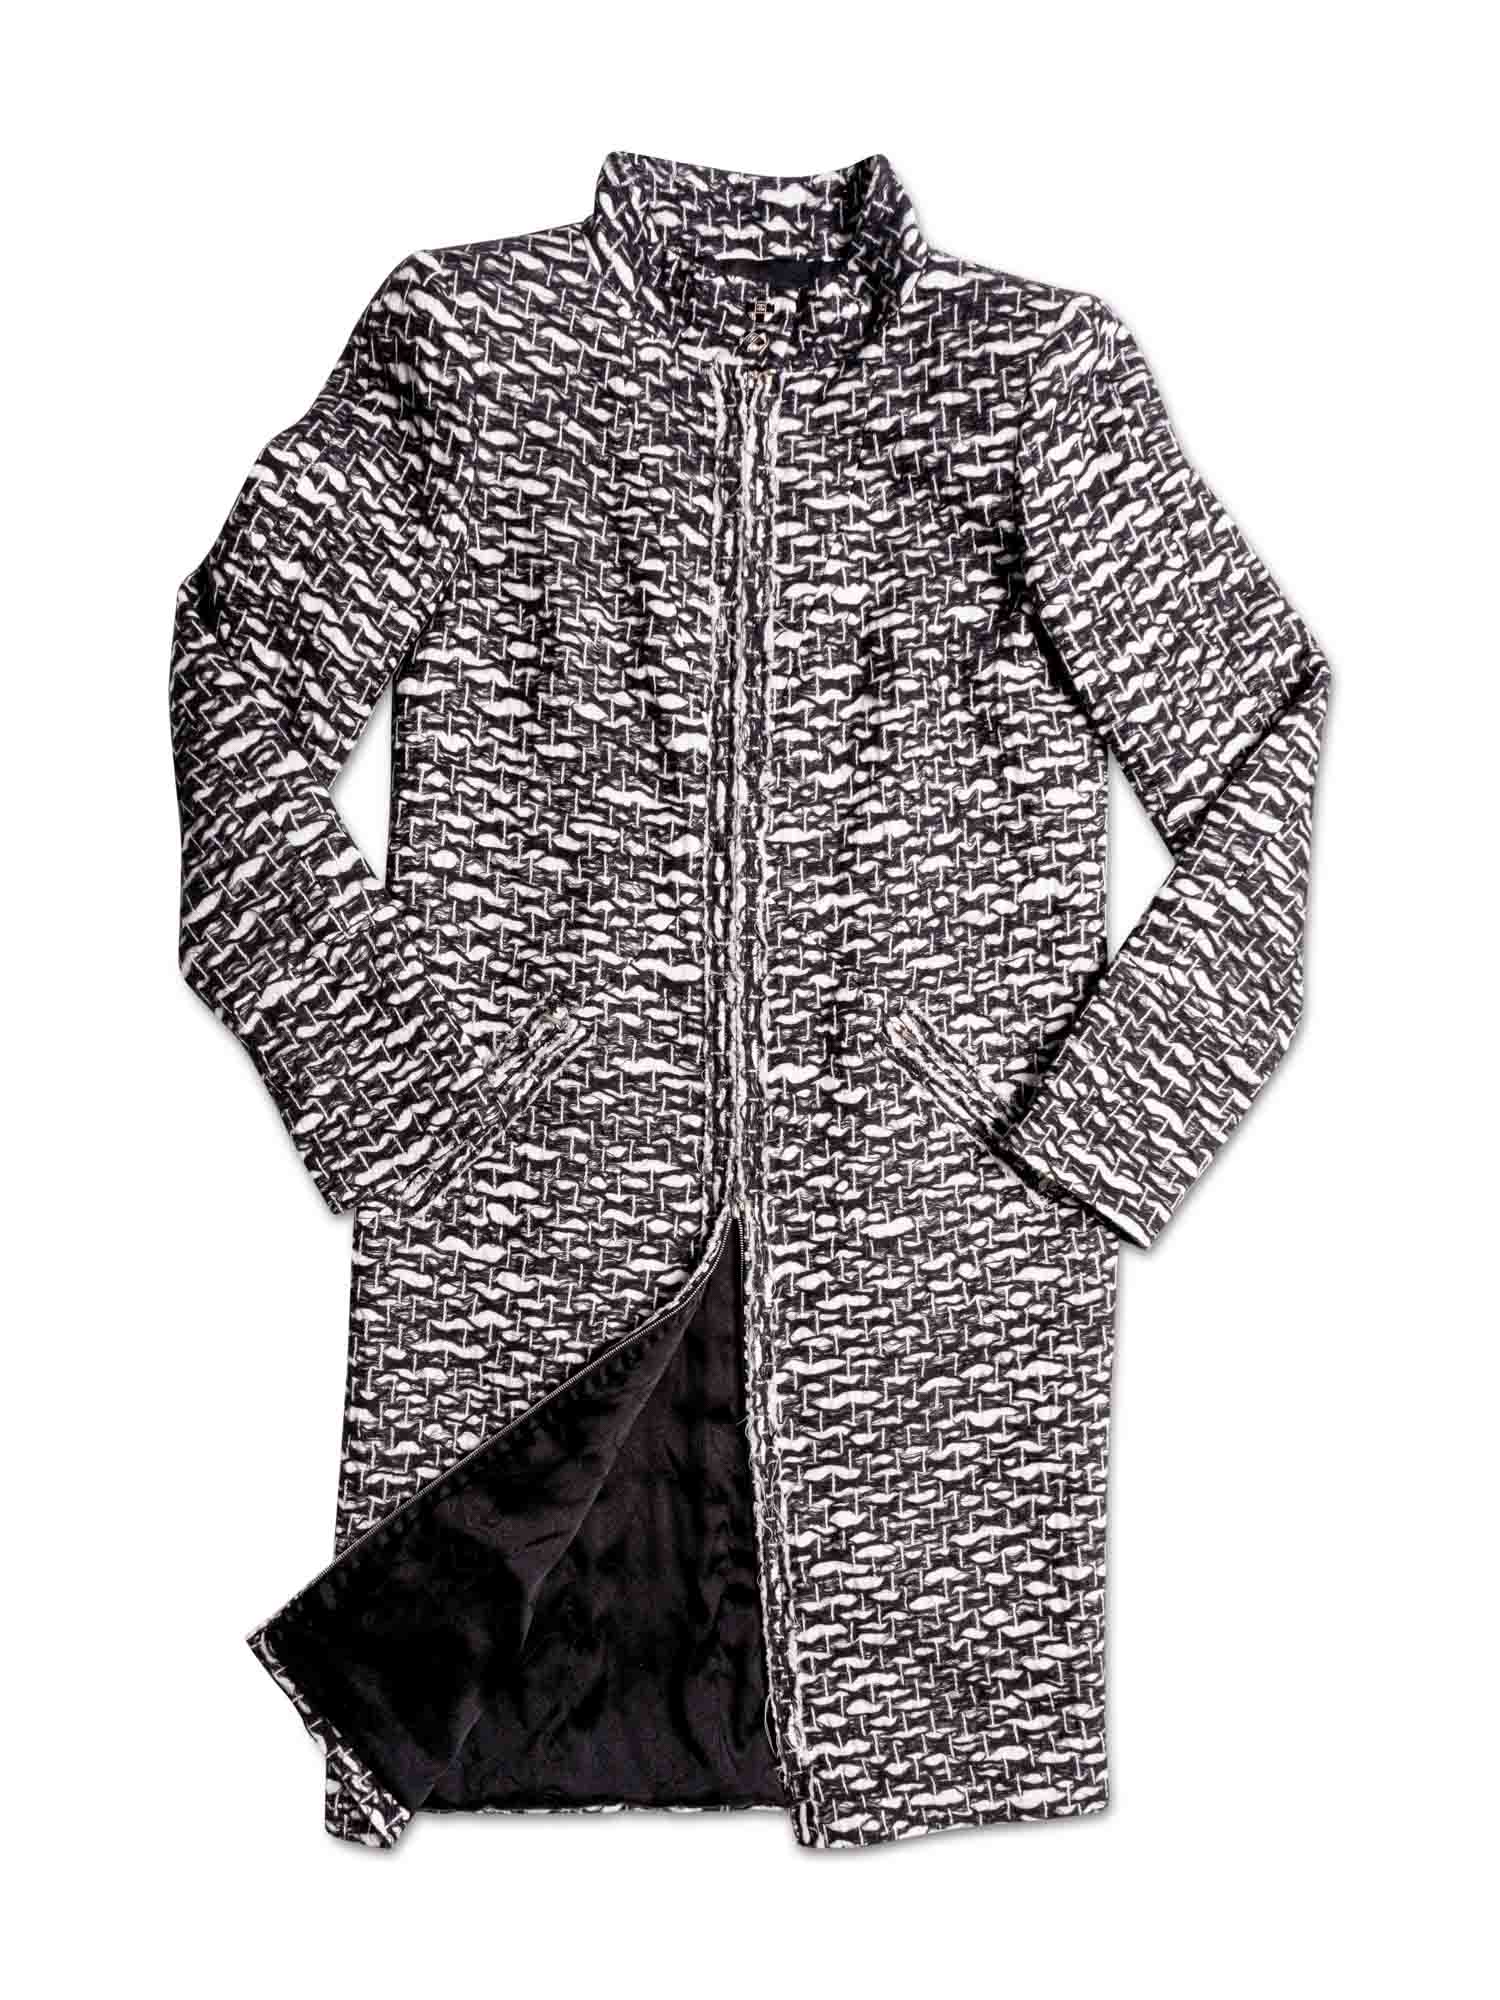 CHANEL CC Logo Fantasy Tweed Fringe A-Line Coat Black White-designer resale